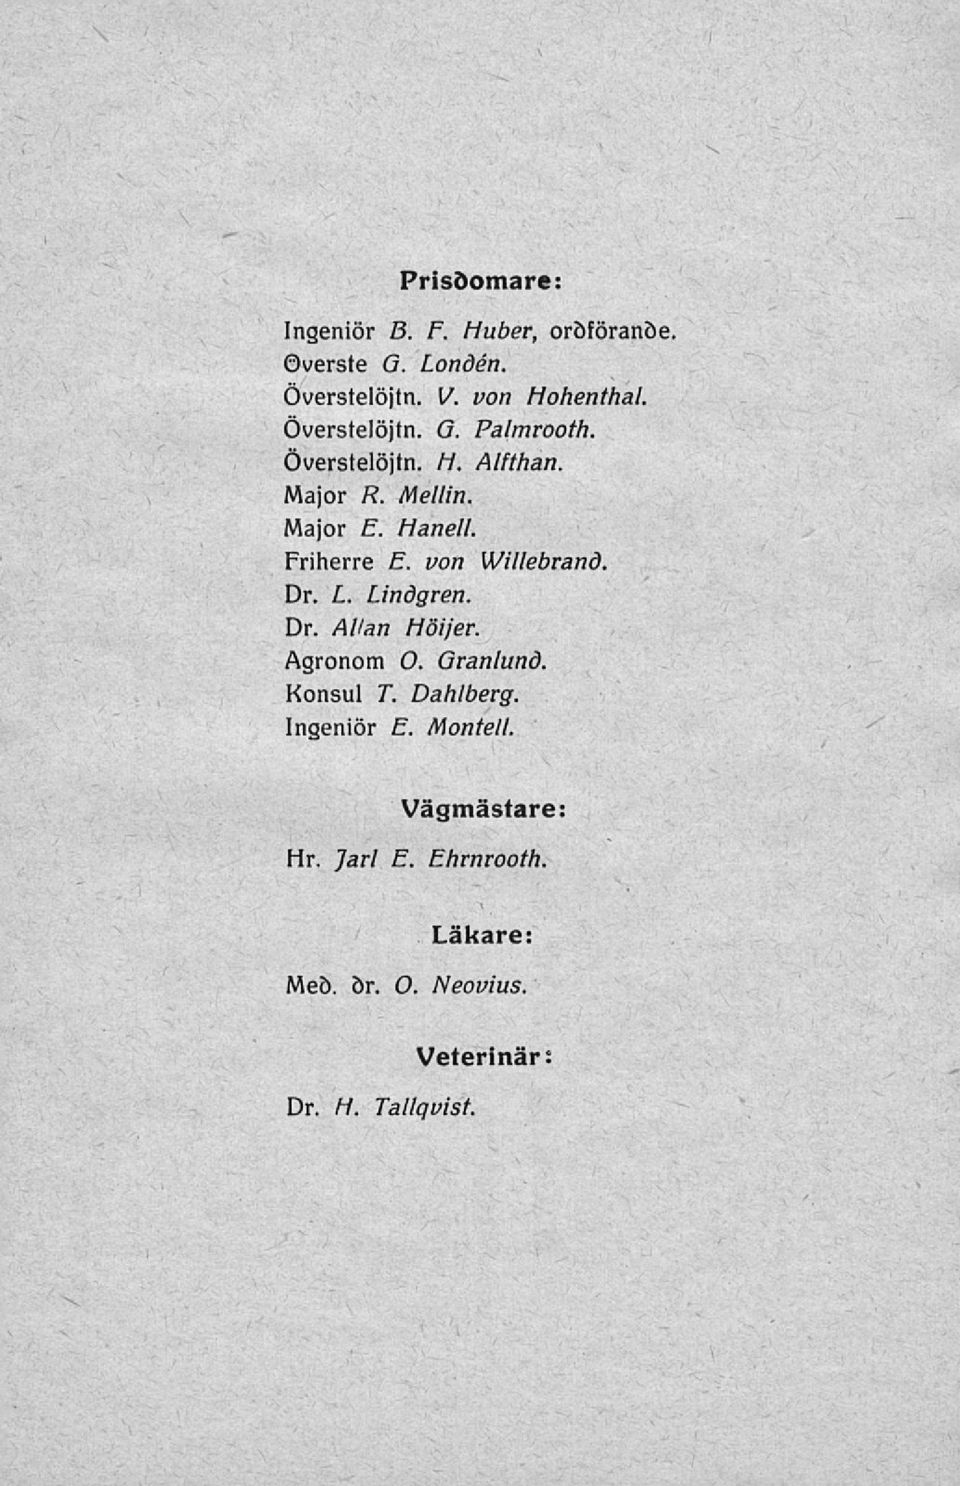 von Willebrand. Dr. L. Lindgren. Dr. Allan Höijer. Agronom O. Granlund. Konsul T. Dahlberg.